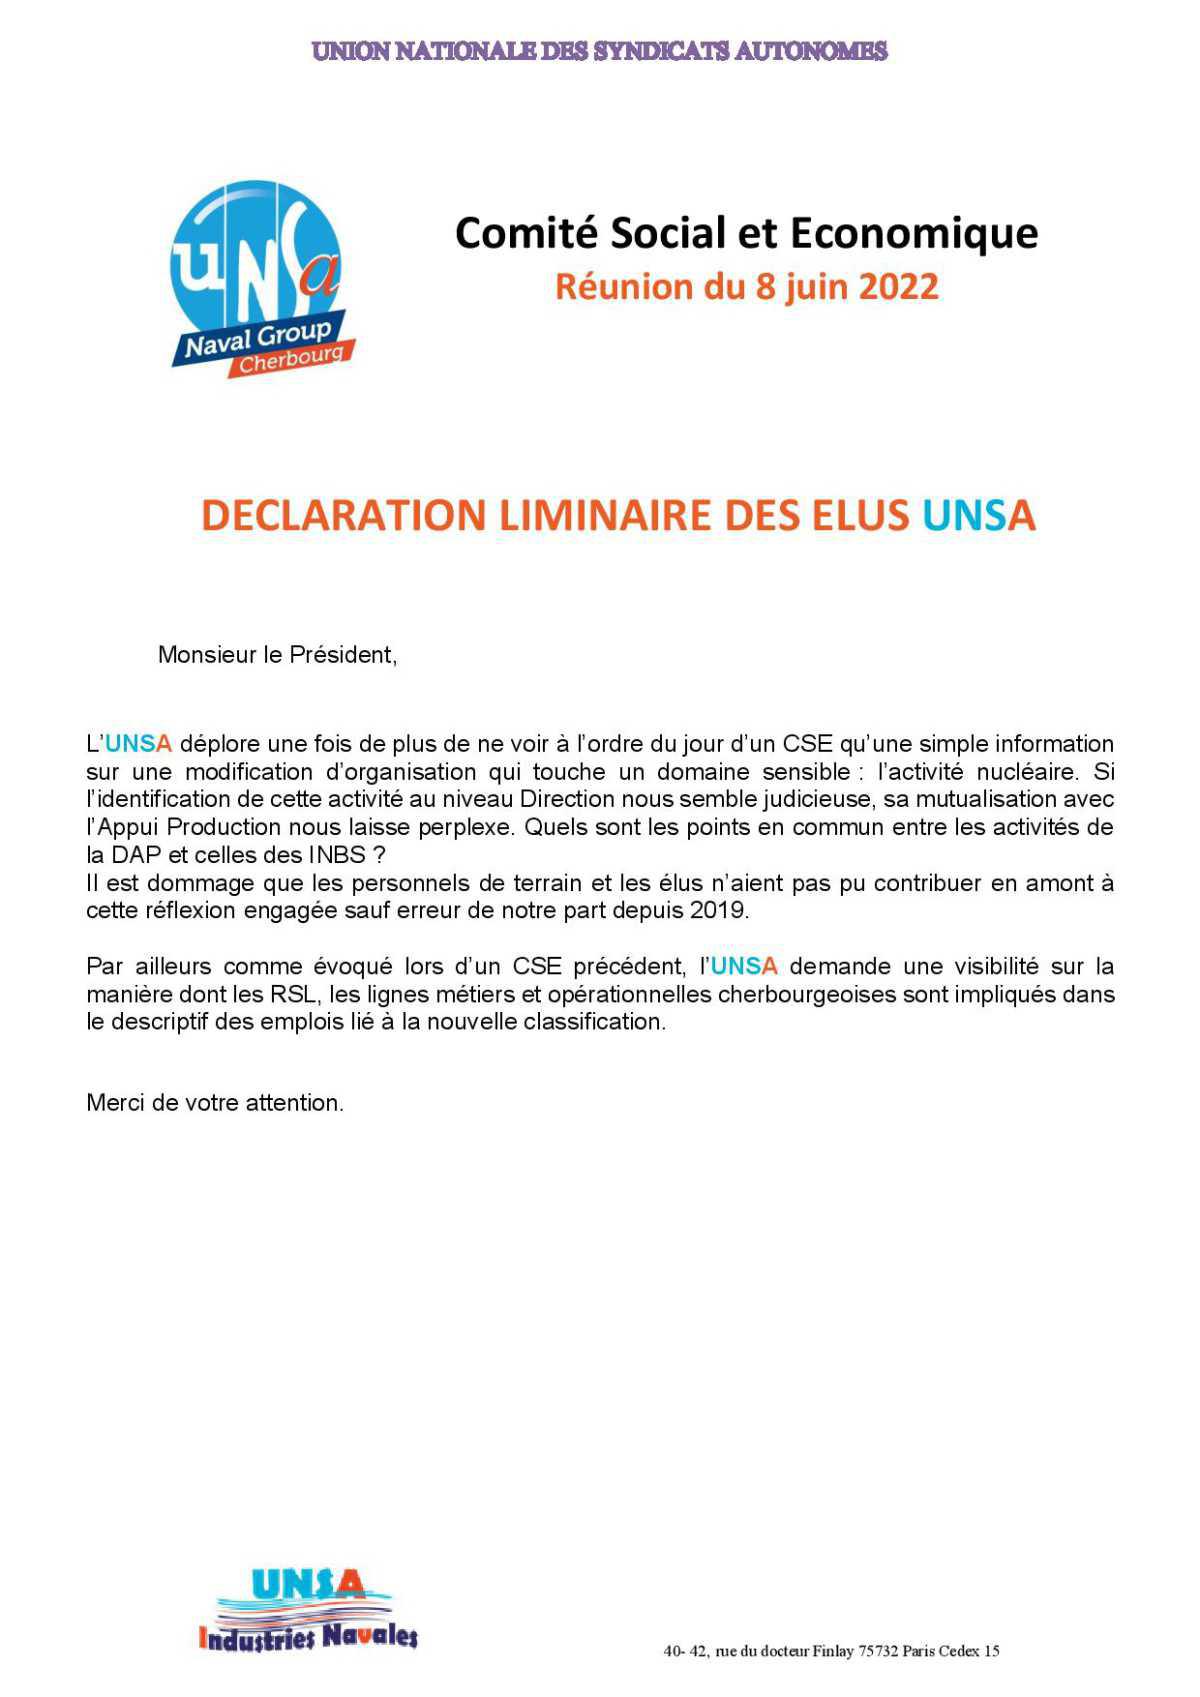 CSE de Cherbourg - Réunion du 8 juin 2022 - Déclaration Liminaire